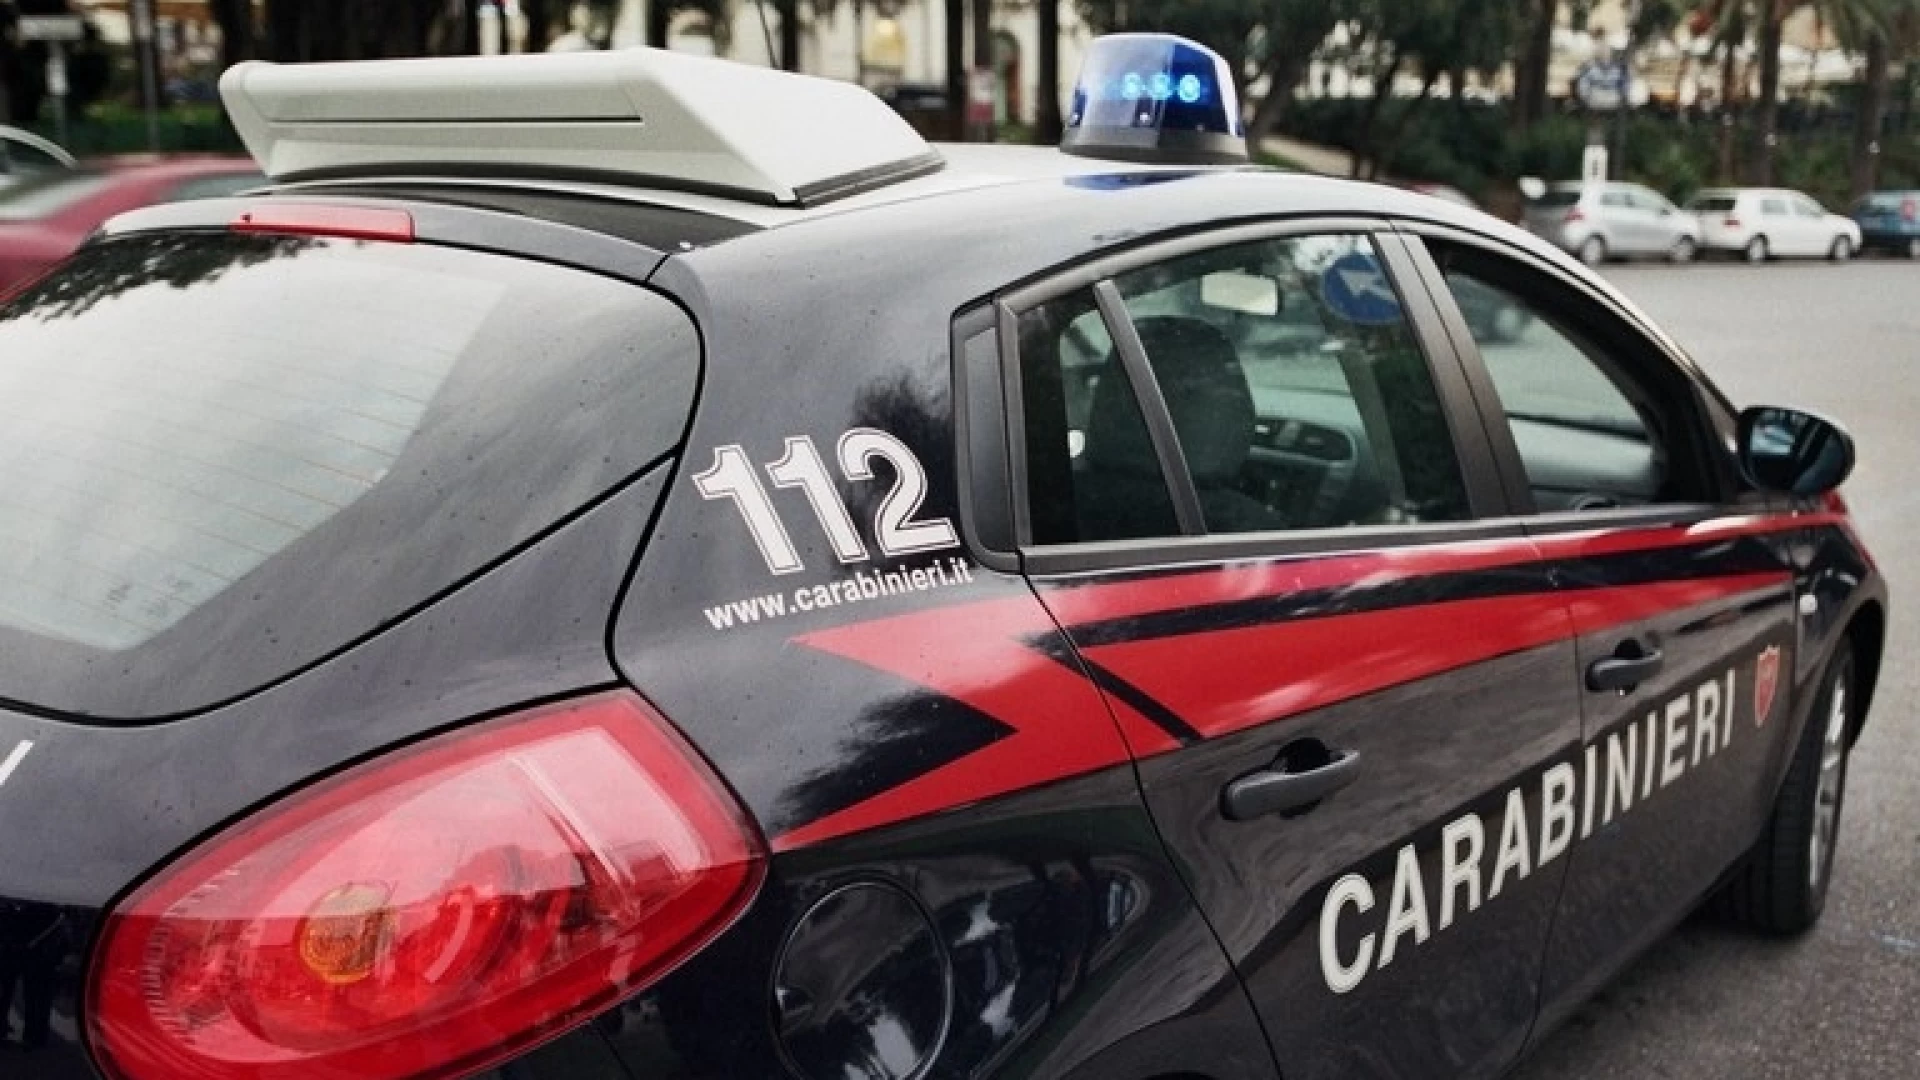 Colli a Volturno: 40enne alla guida completamente ubriaca fermata e deferita dai Carabinieri. Utilizzato l'etilometro per il controllo